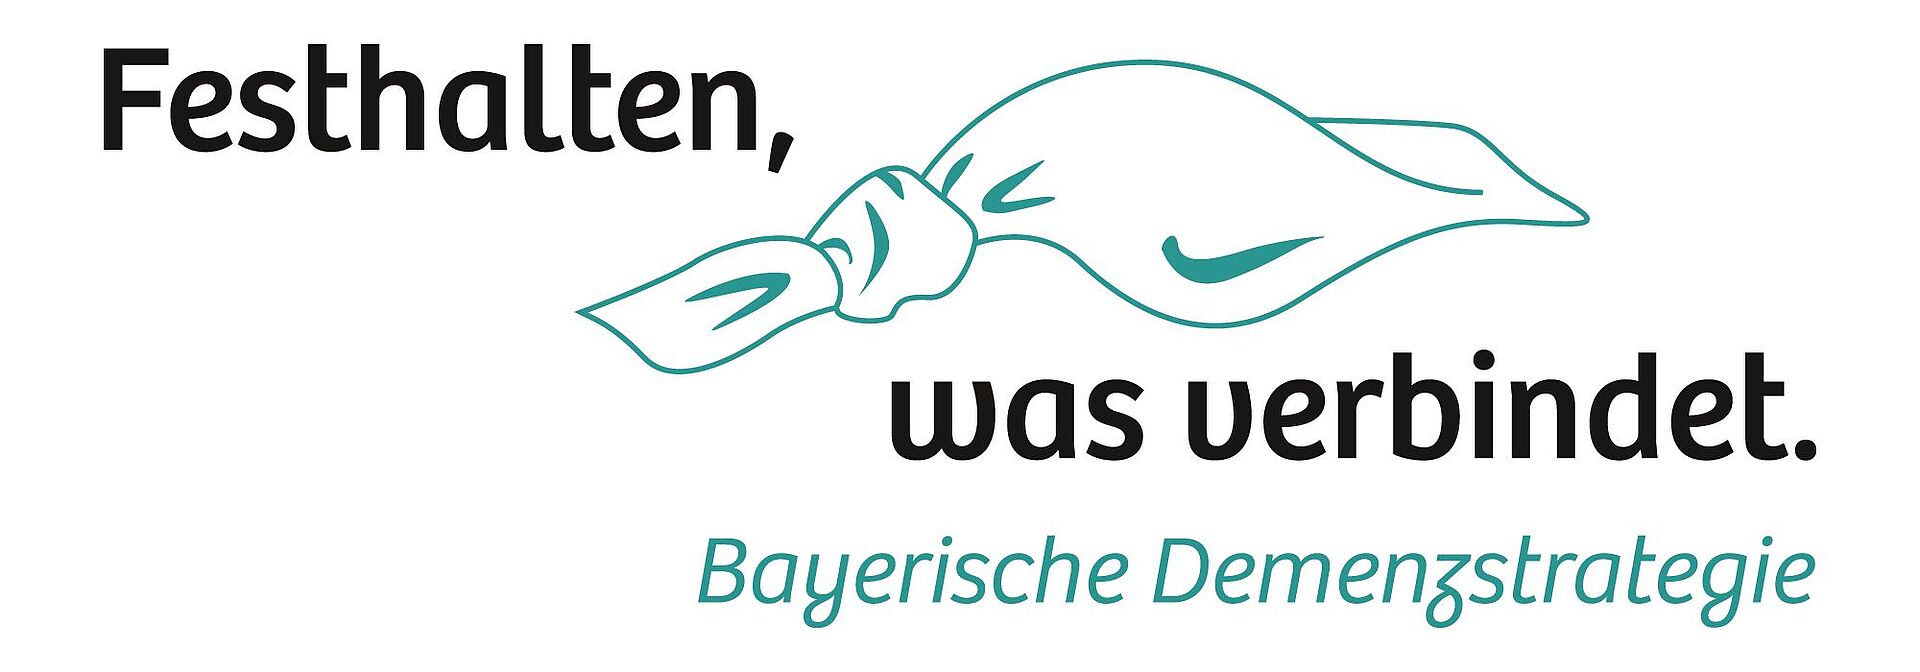 Bayerische Demenzstrategie